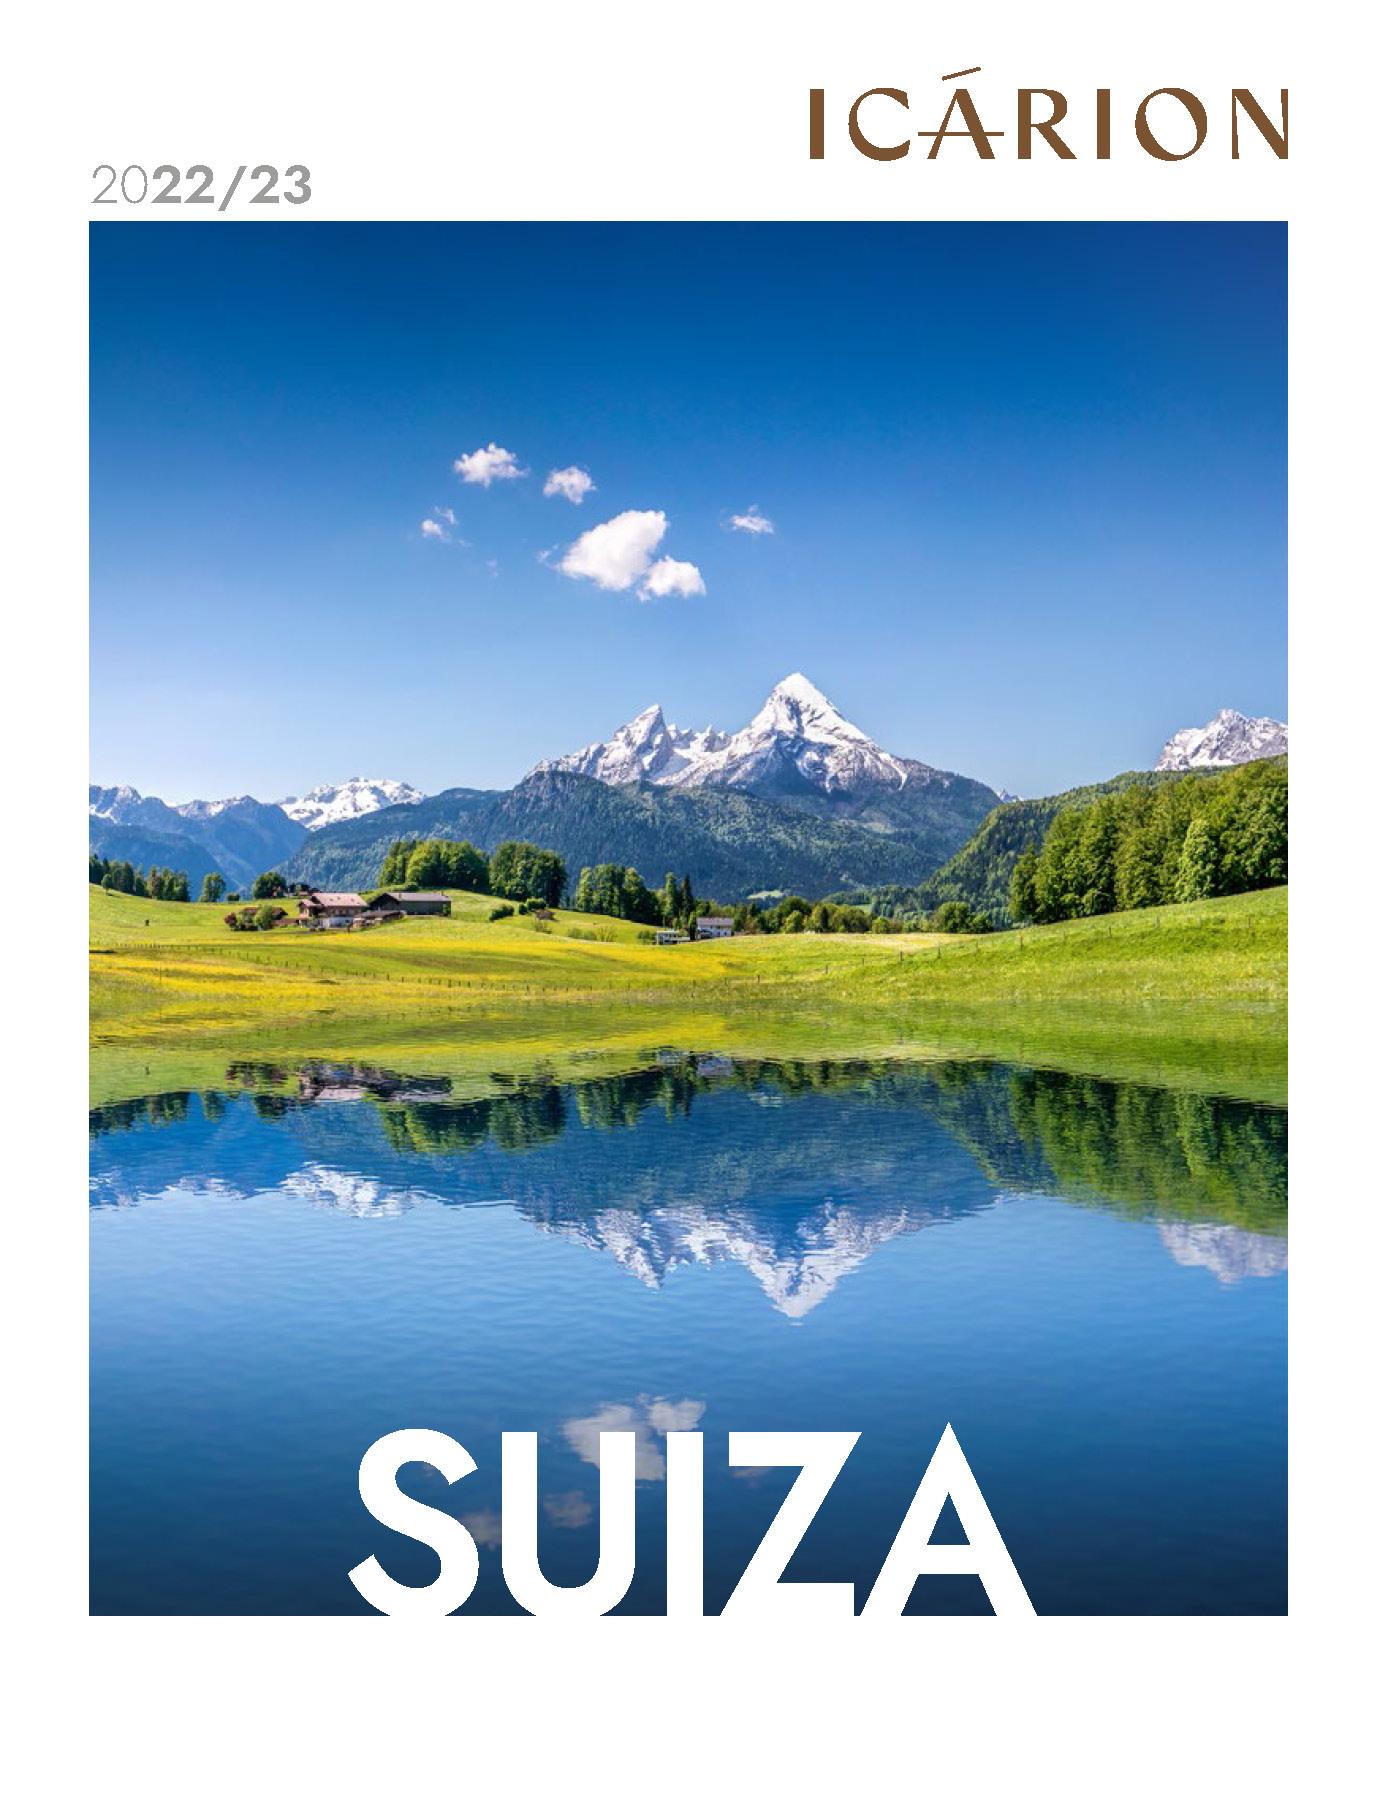 Catalogo Icarion Suiza 2022-2023